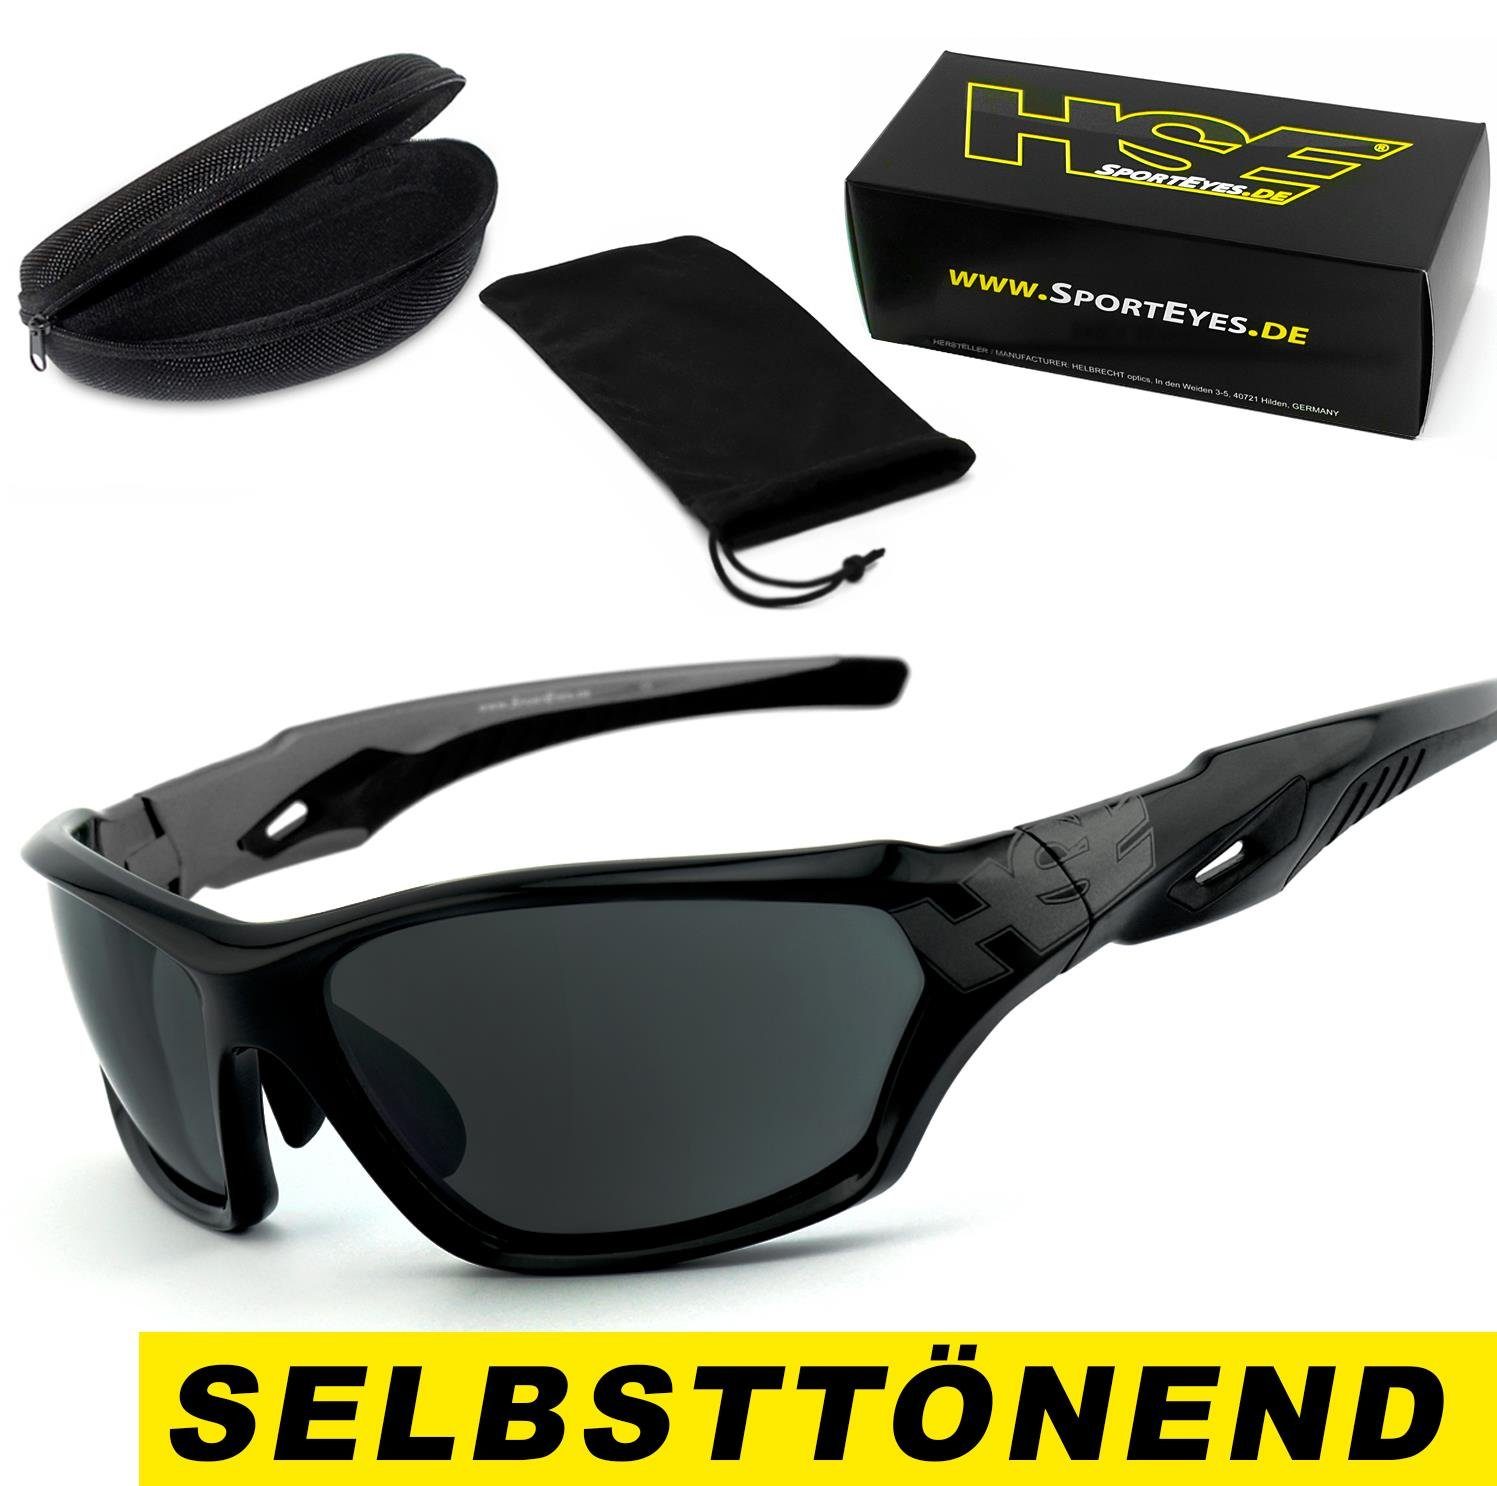 HSE - SportEyes Sportbrille 2093bs - selbsttönend, schnell selbsttönende Gläser, MADE IN GERMANY